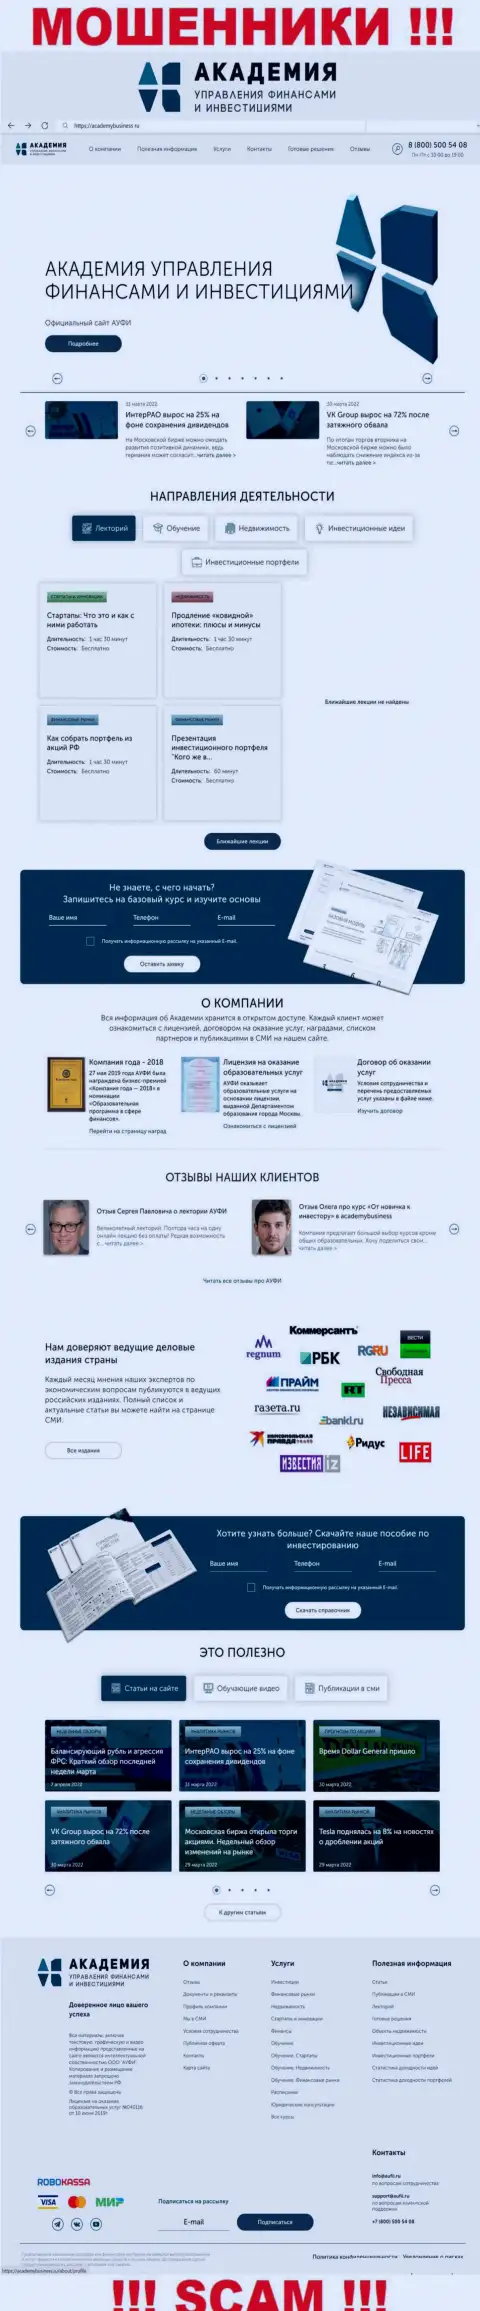 Информационный ресурс жульнической конторы АУФИ - AcademyBusiness Ru